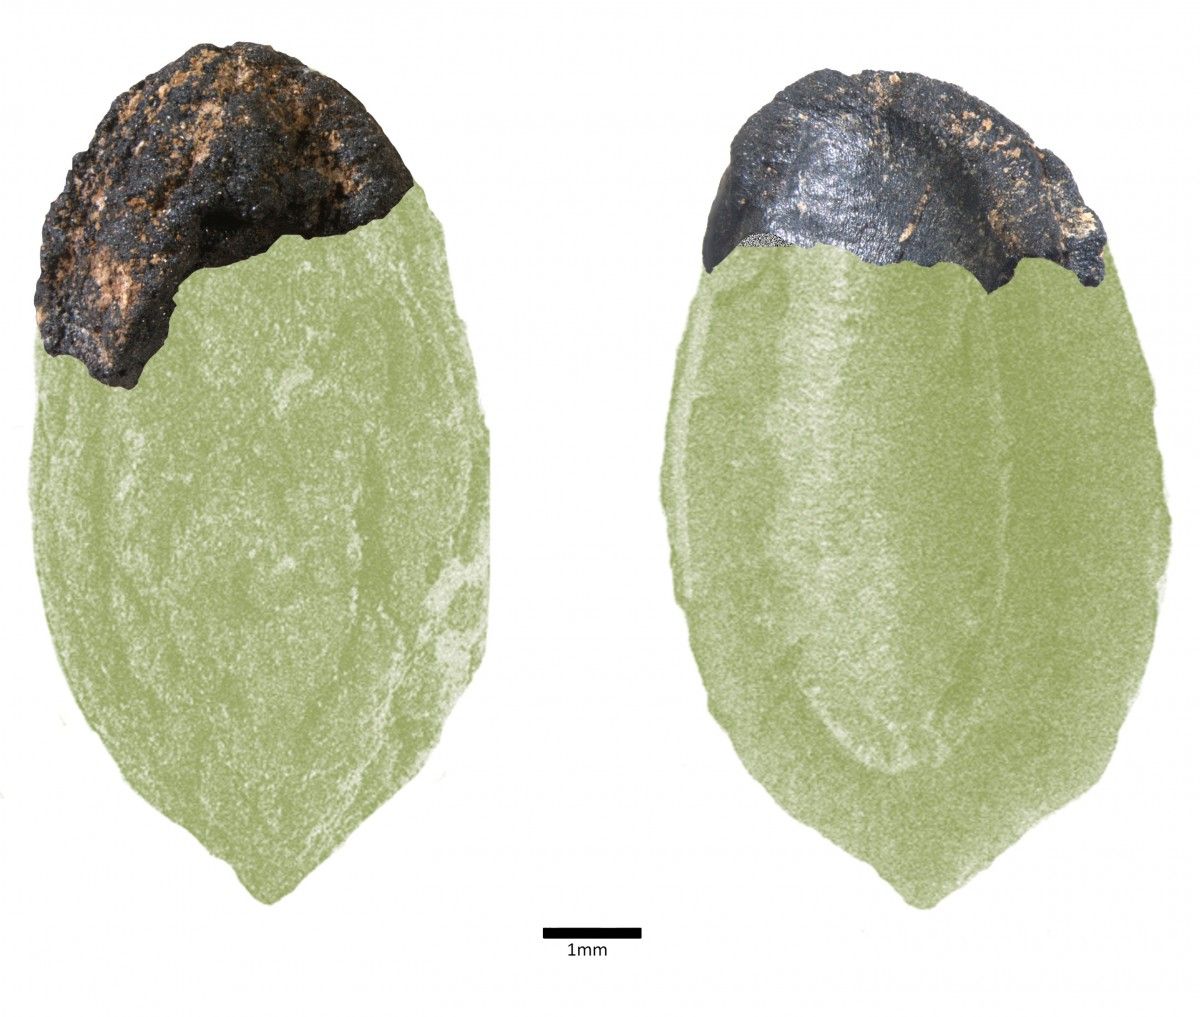 Fotografia del fragment de pinyol trobat al jaciment de vilars d'Arbeca, superposada a la d'un pinyol sencer, per fora i per dins.